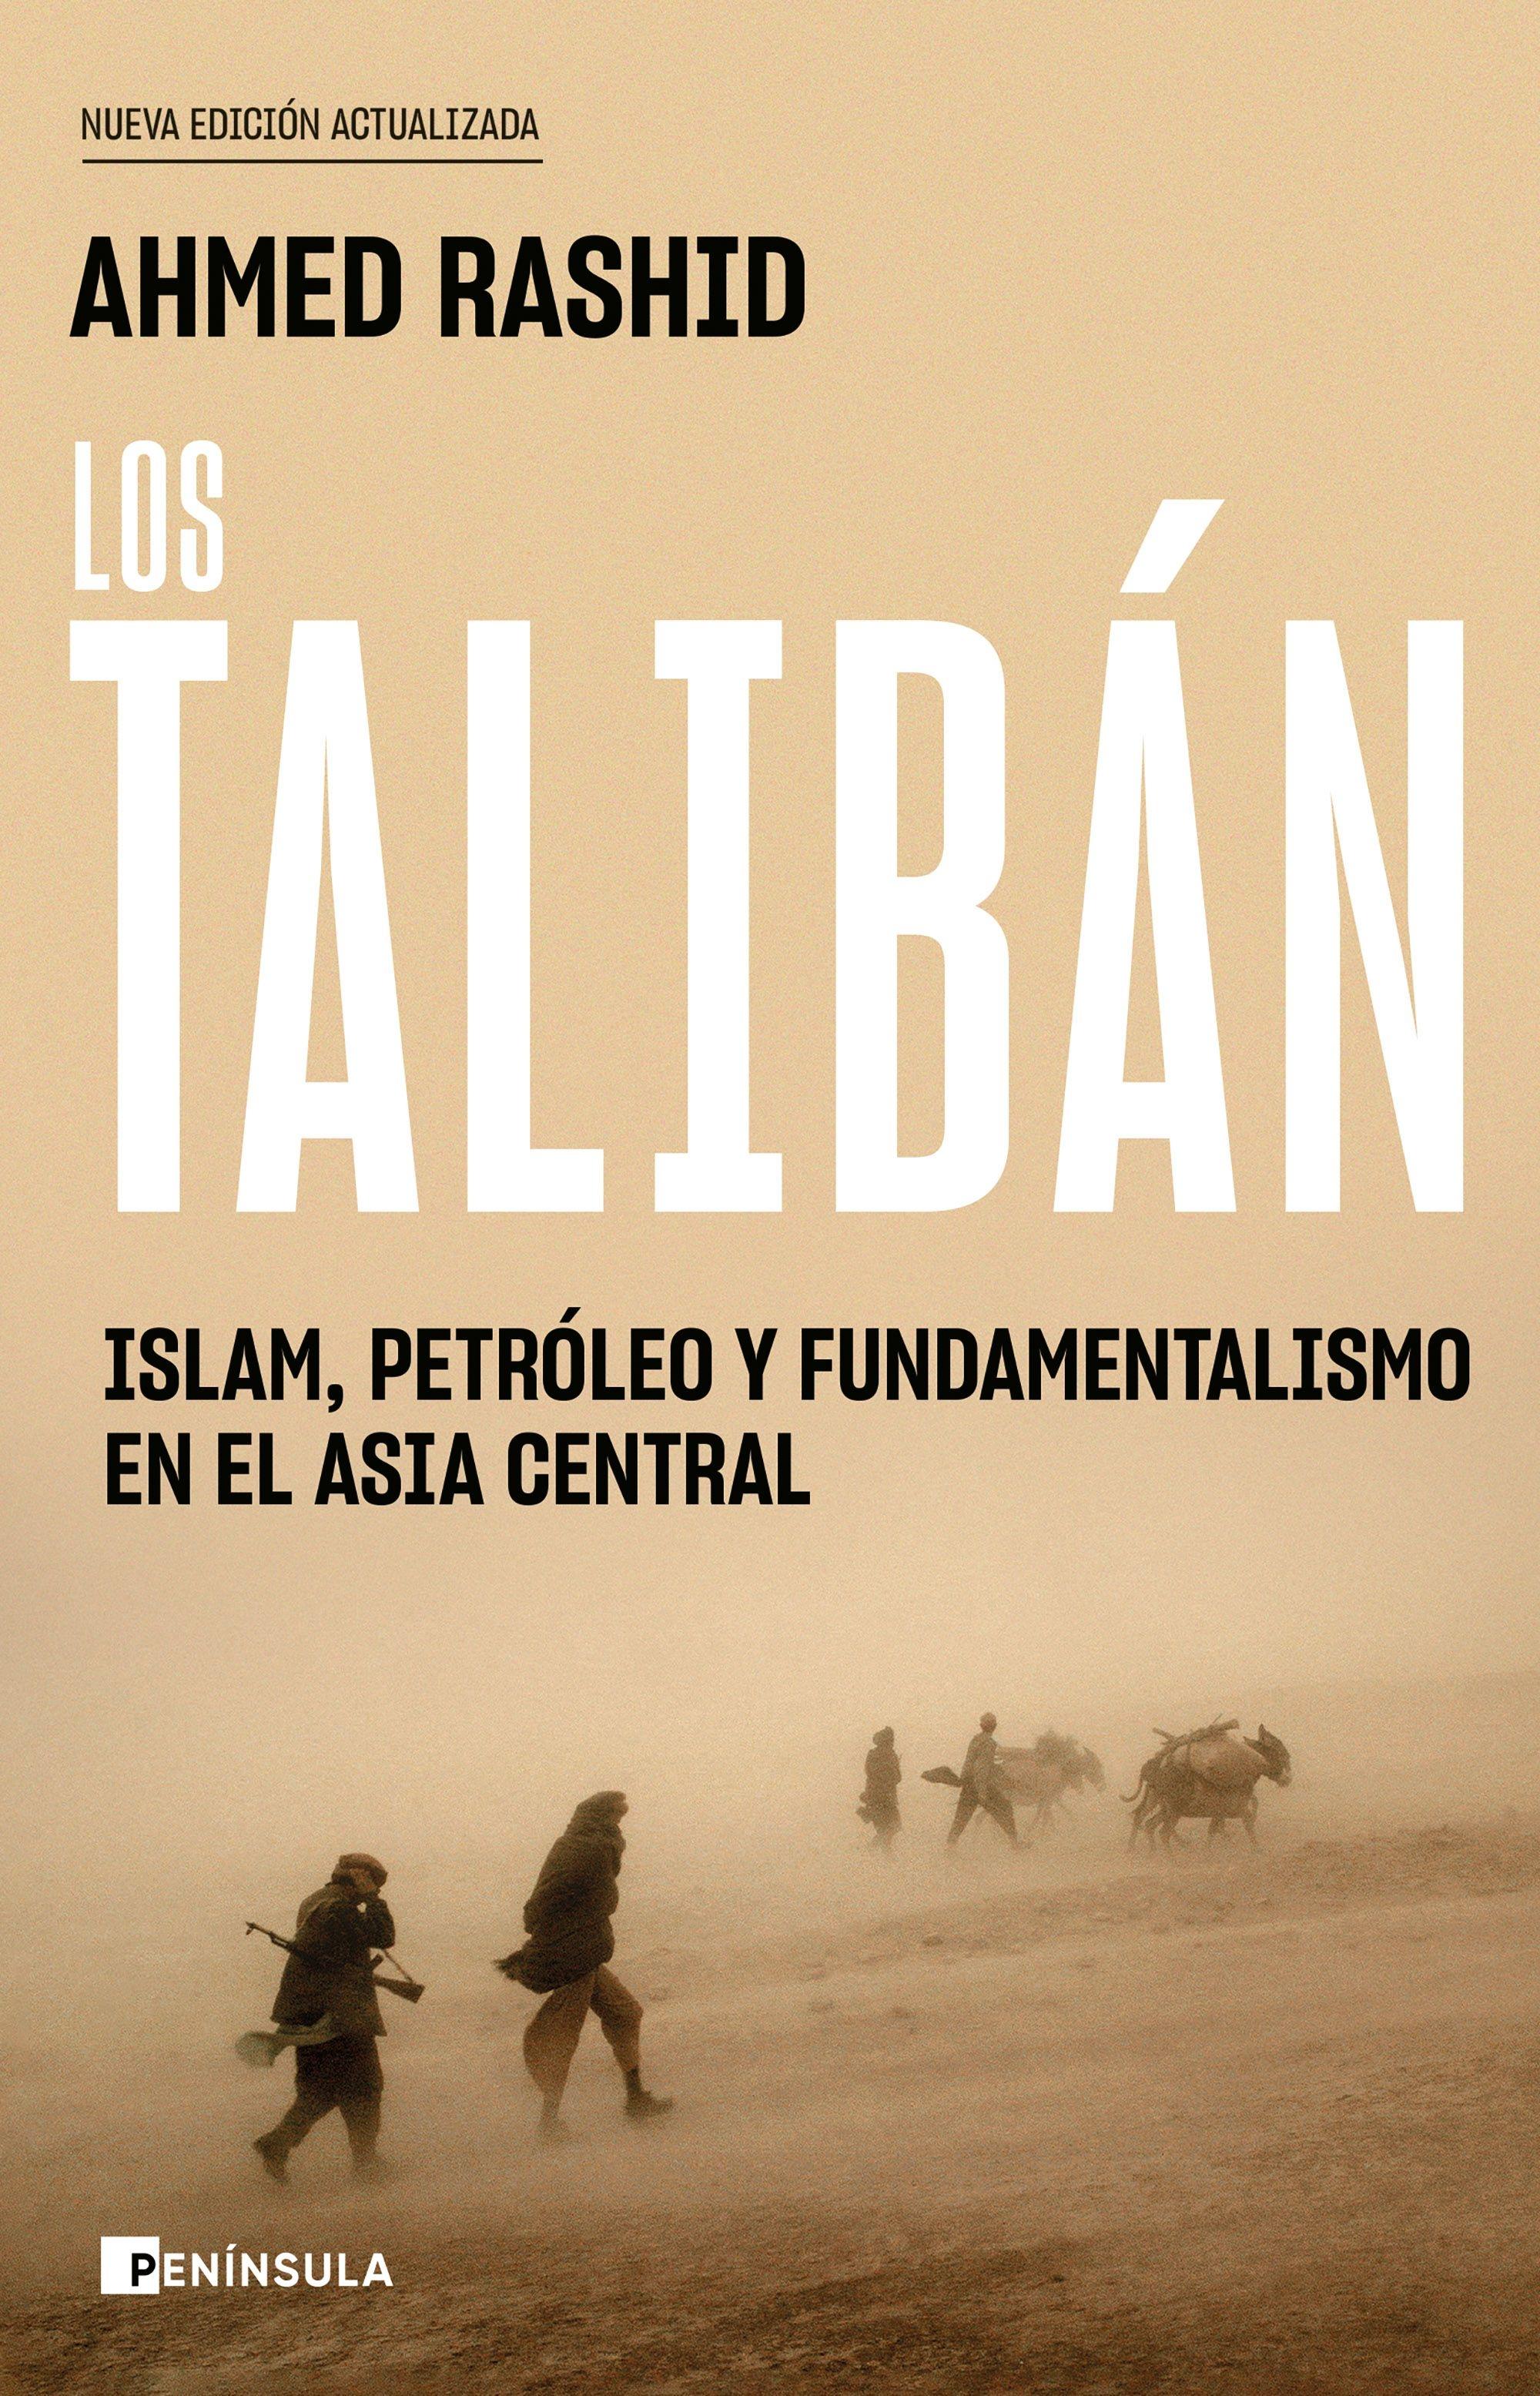 Los Taliban "Islam, Petroleo y Fundamentalismo en el Asia Central". 